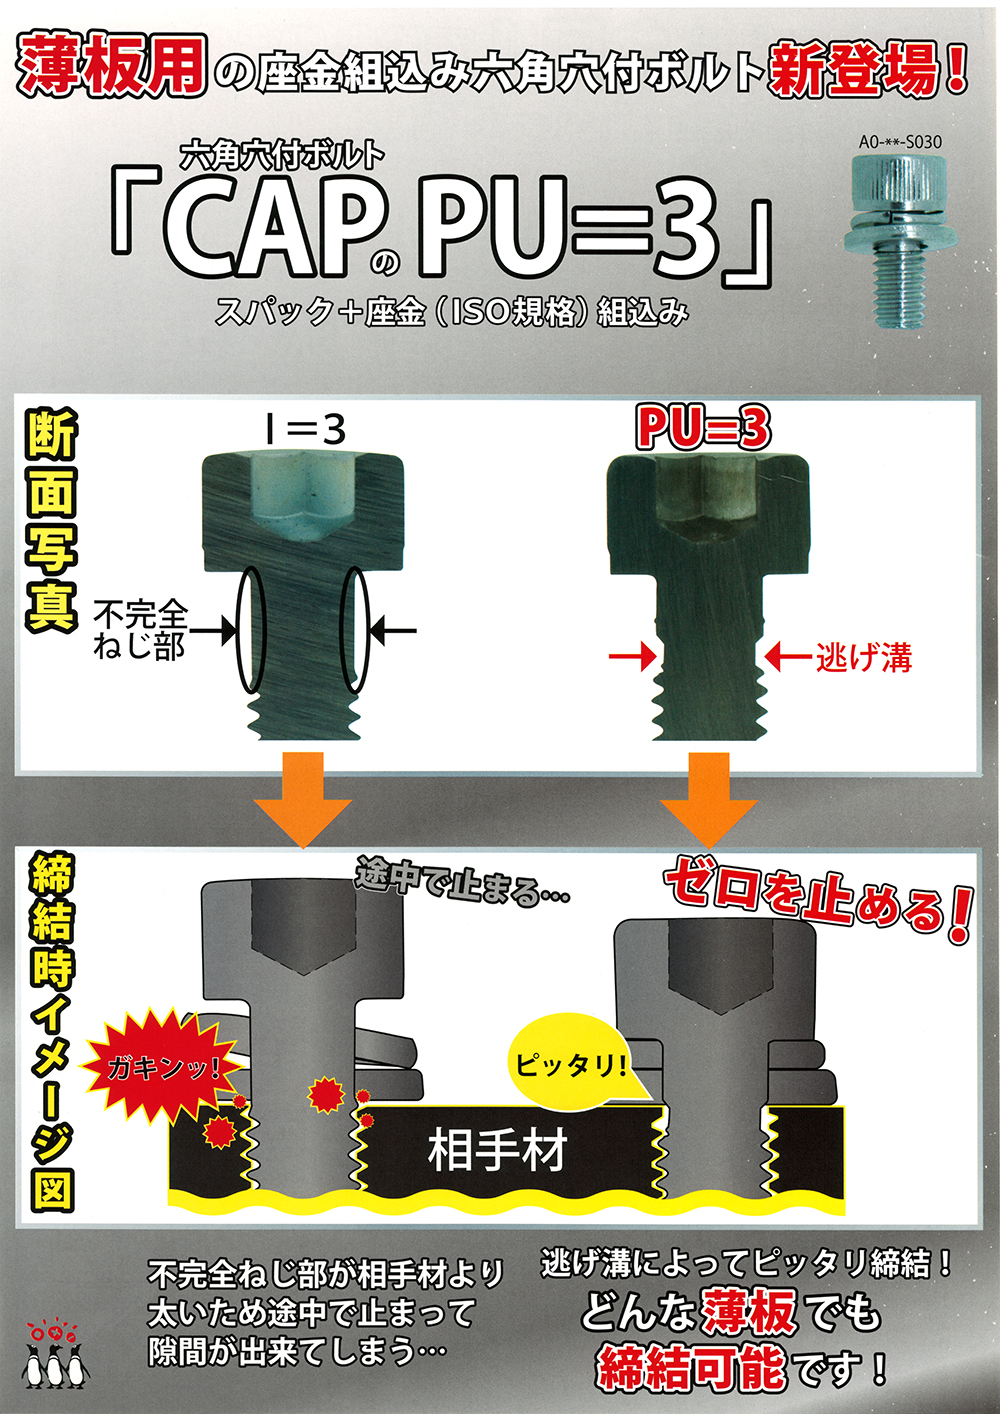 CAP(ヒダリネジ 規格(16X60) 入数(20) 【CAP 左ねじシリーズ】